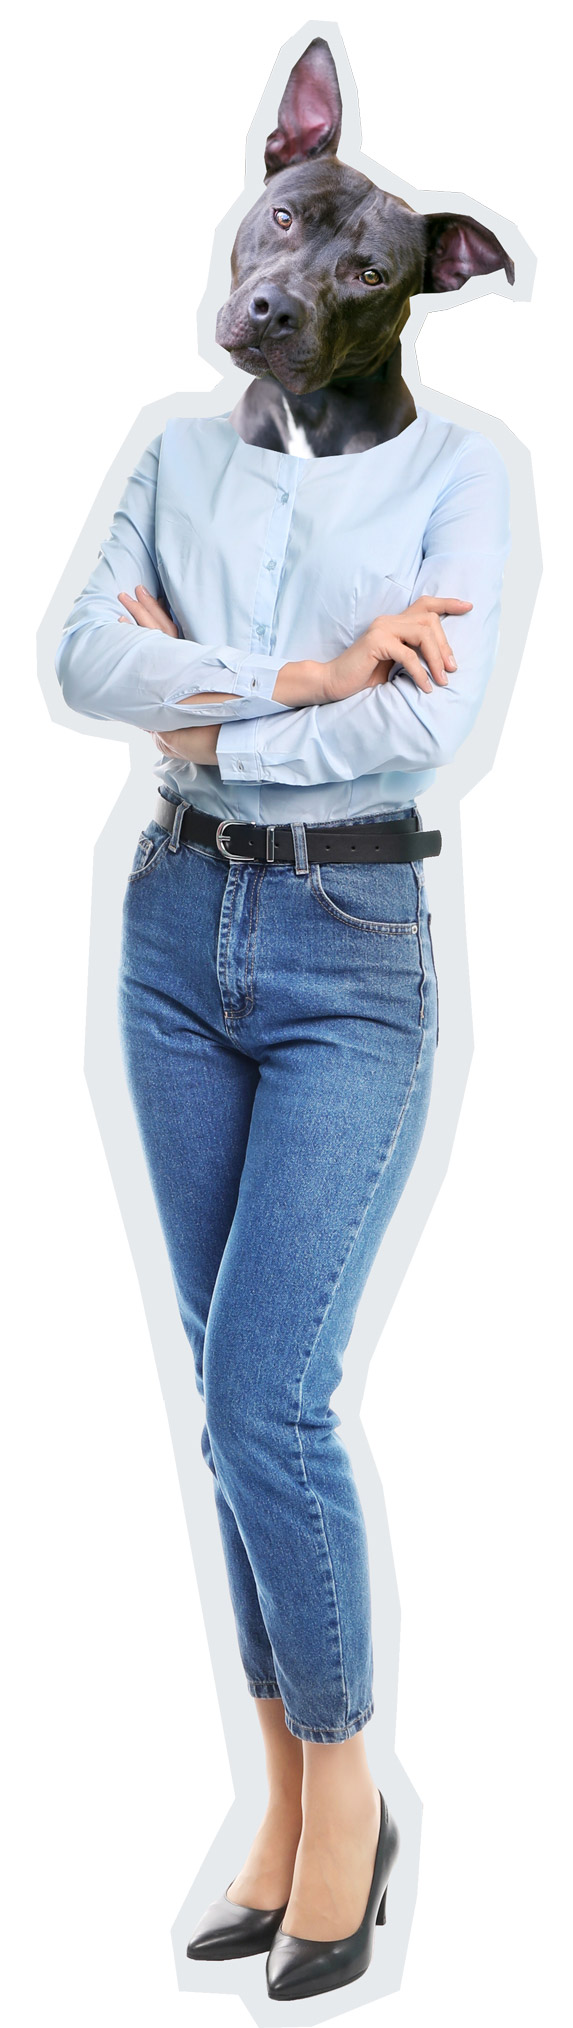 Immagine intera di una donna in camica e jeans con la testa di un pitbull